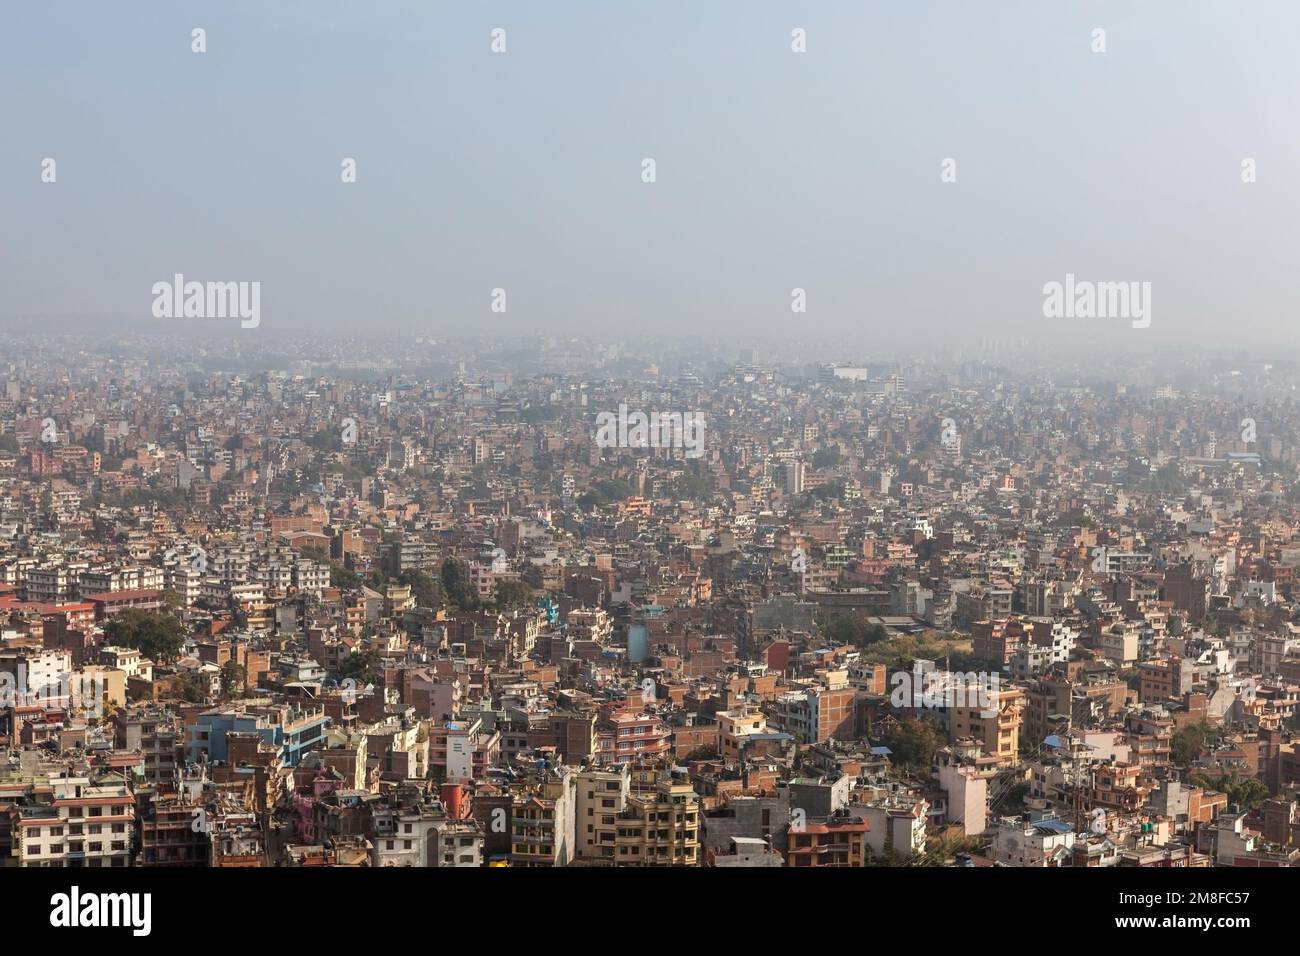 Luftaufnahme über die nepalesische Hauptstadt Kathmandu vom Swayambhunath-Tempel. Große, riesige asiatische Stadt bedeckt mit dichtem Smog, ohne sichtbare Grenzen und Str. Stockfoto